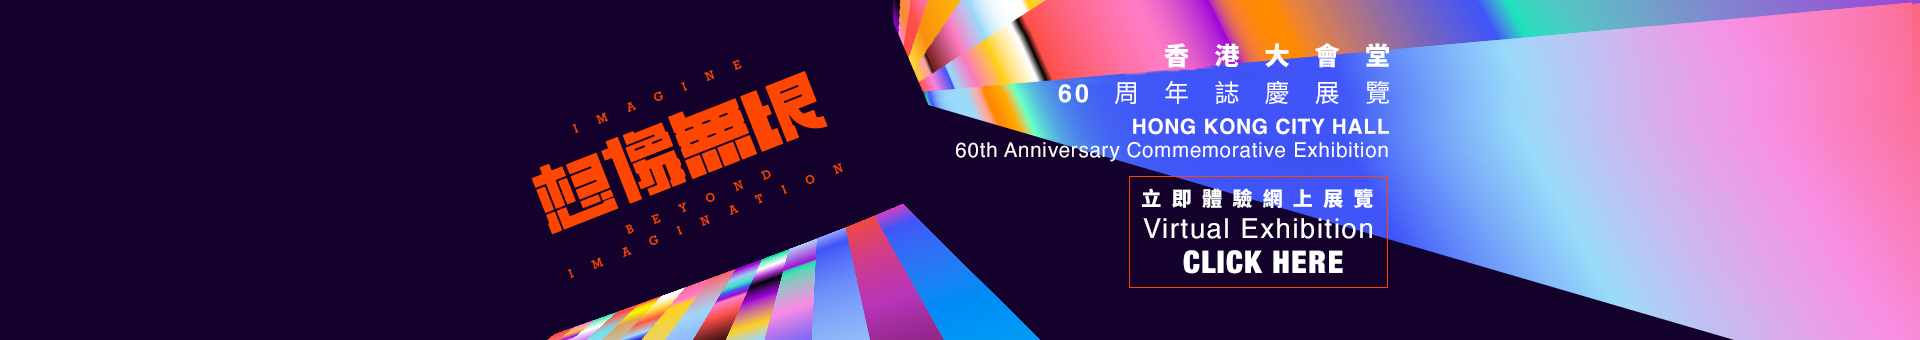 香港大会堂60周年志庆展览《想像无垠》【网上展览】